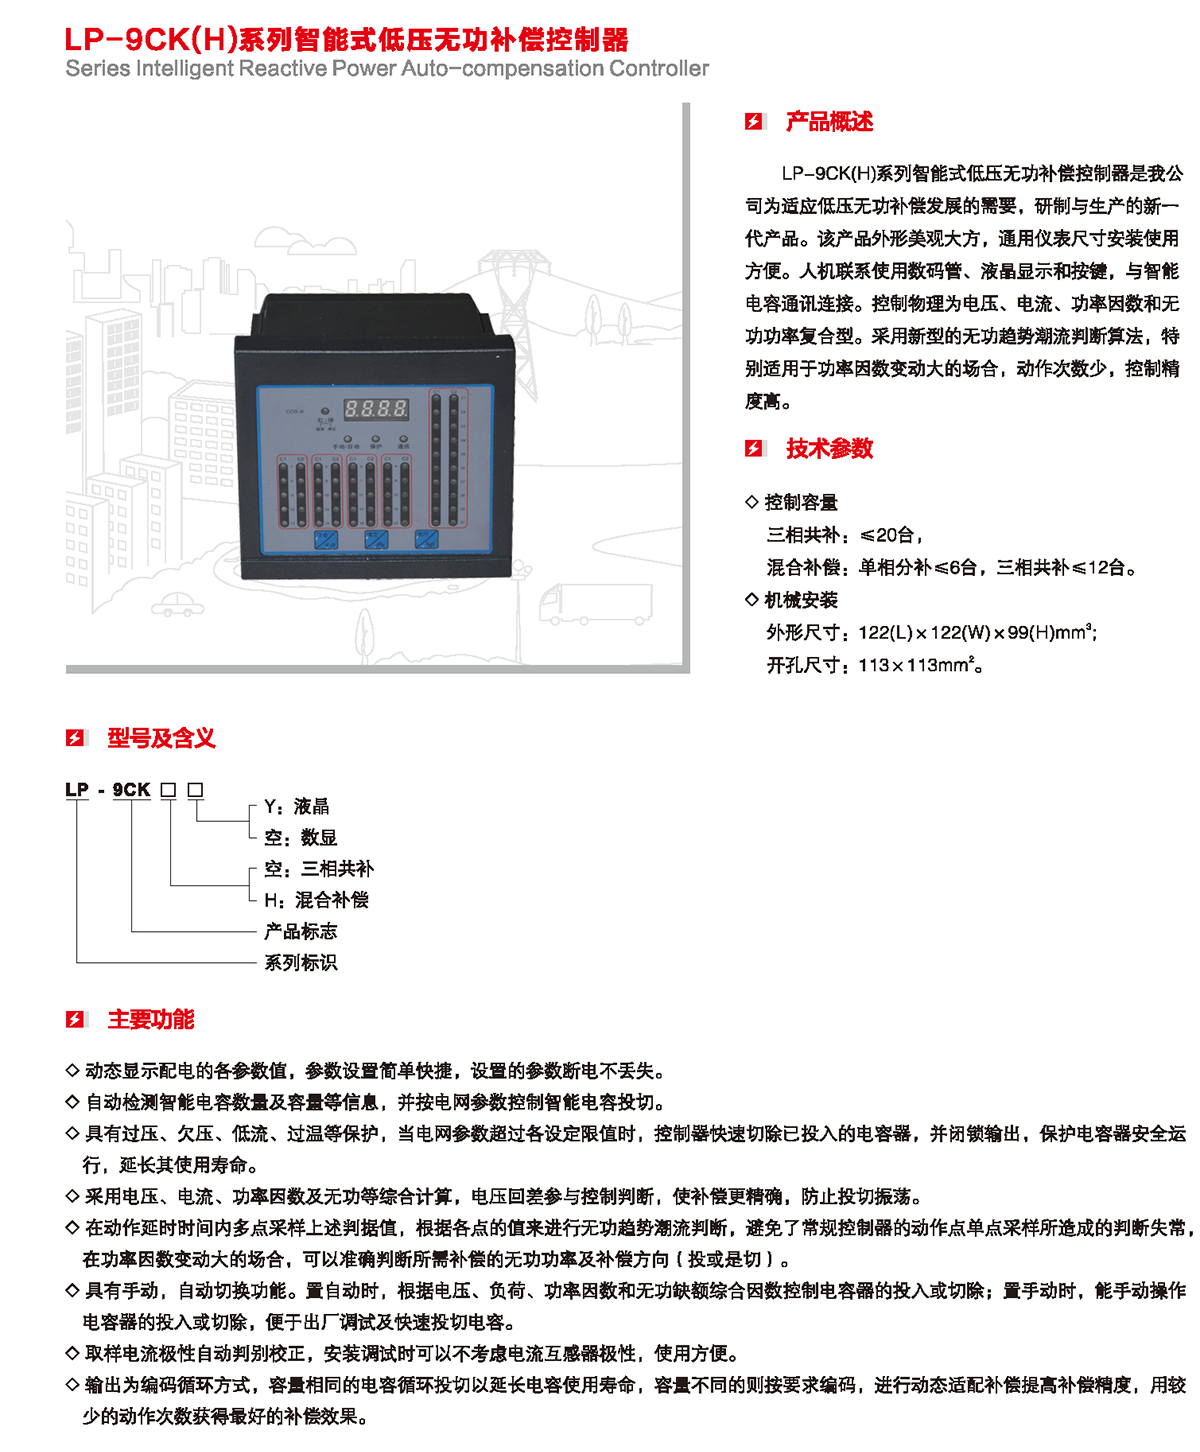 LP-9CK（H）系列智能式低压无功补偿控制器产品详情